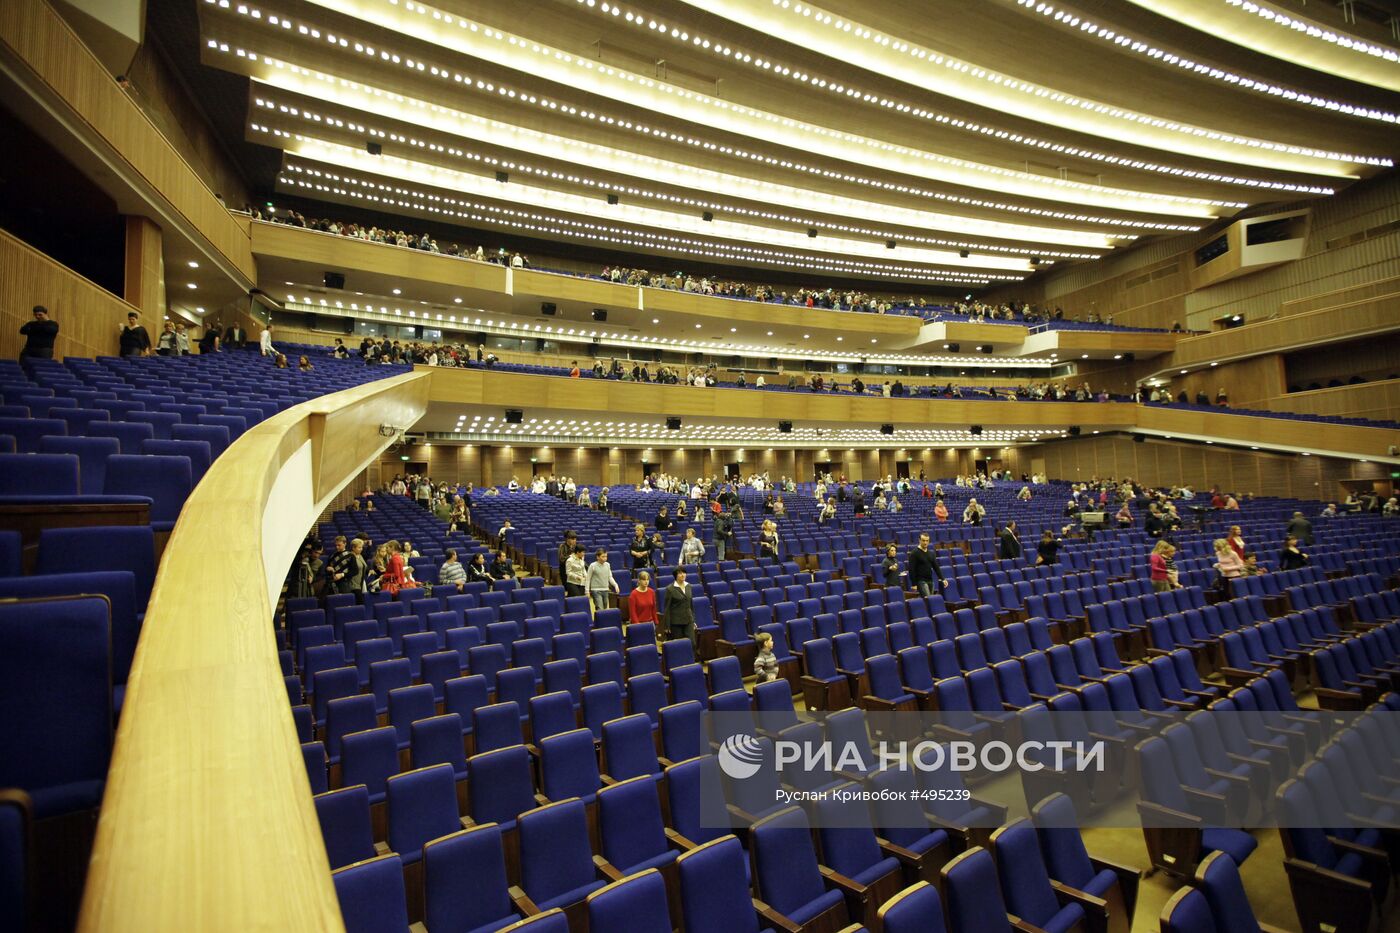 Кремлевский дворец амфитеатр. Государственный Кремлевский дворец зал. Концертный зал кремлевского дворца амфитеатр. Кремлевский дворец большой зал амфитеатр.